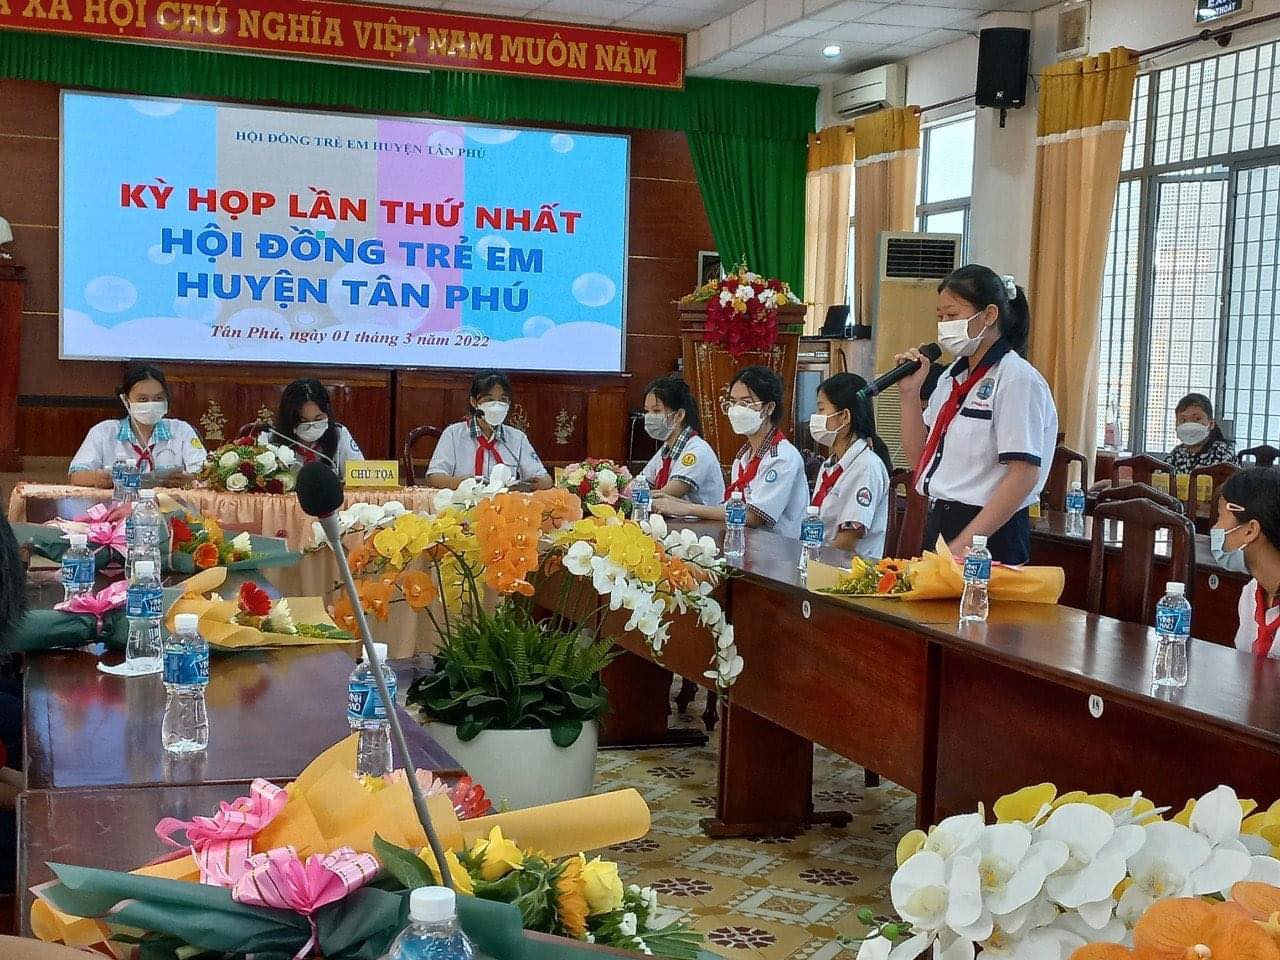 Kỳ họp lần thứ nhất Hội đồng trẻ em huyện Tân Phú